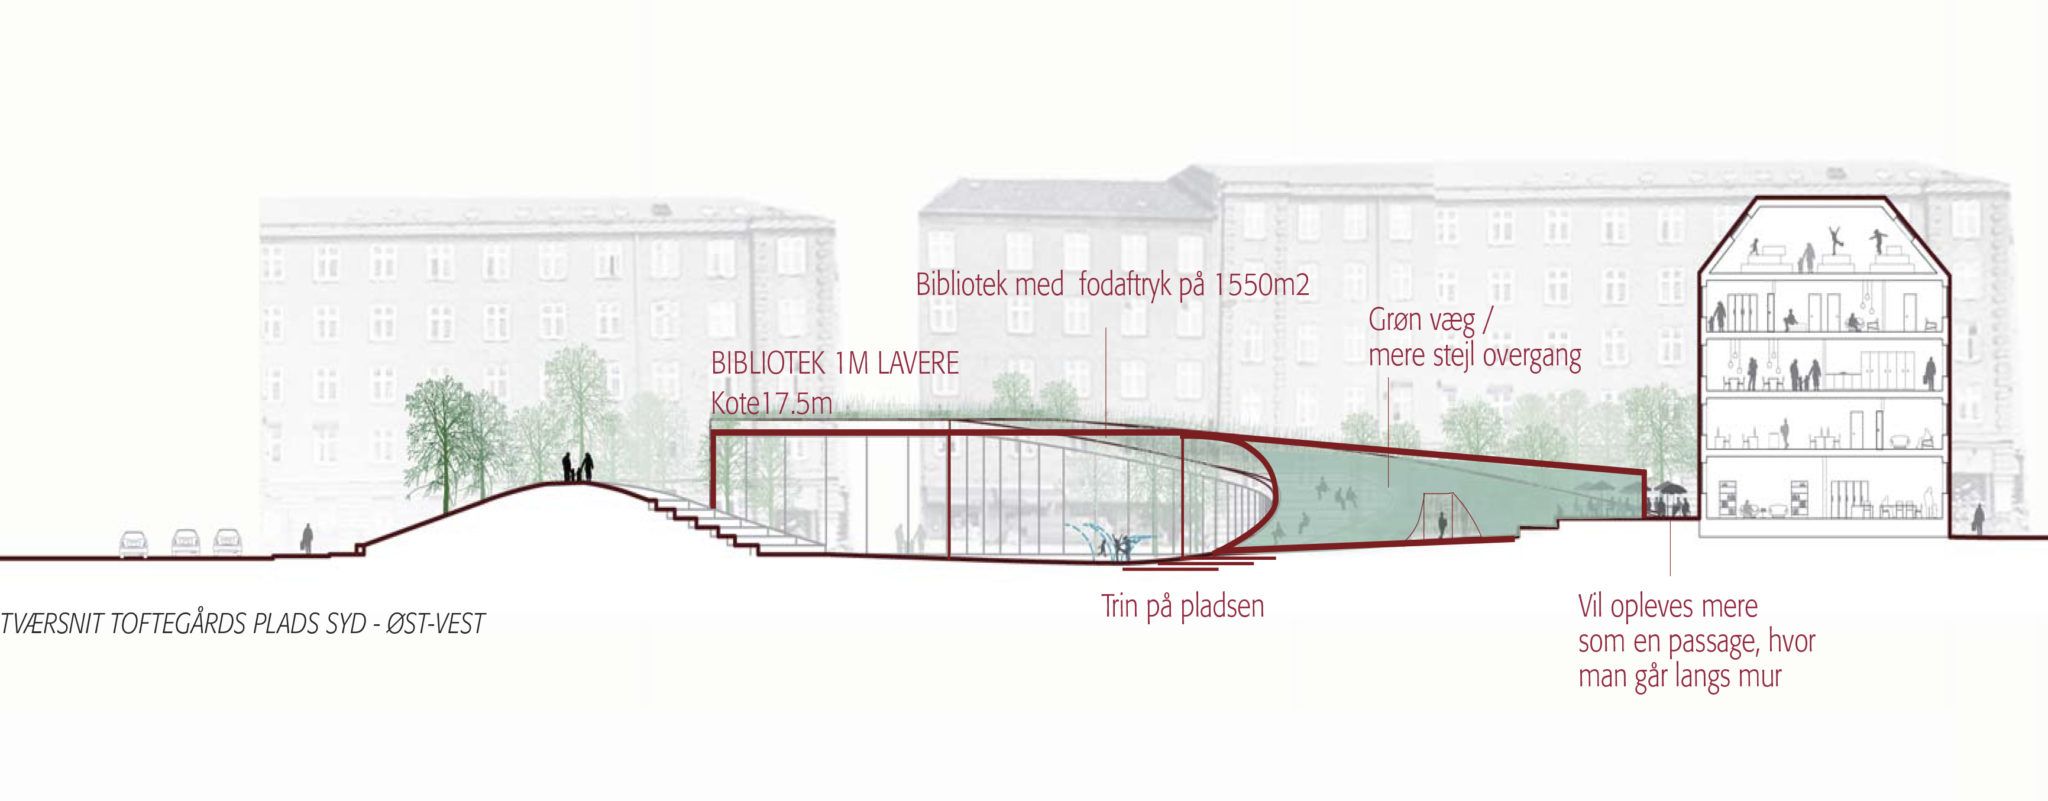 Tværsnit variant A Valby Bibliotek Toftegårds Plads